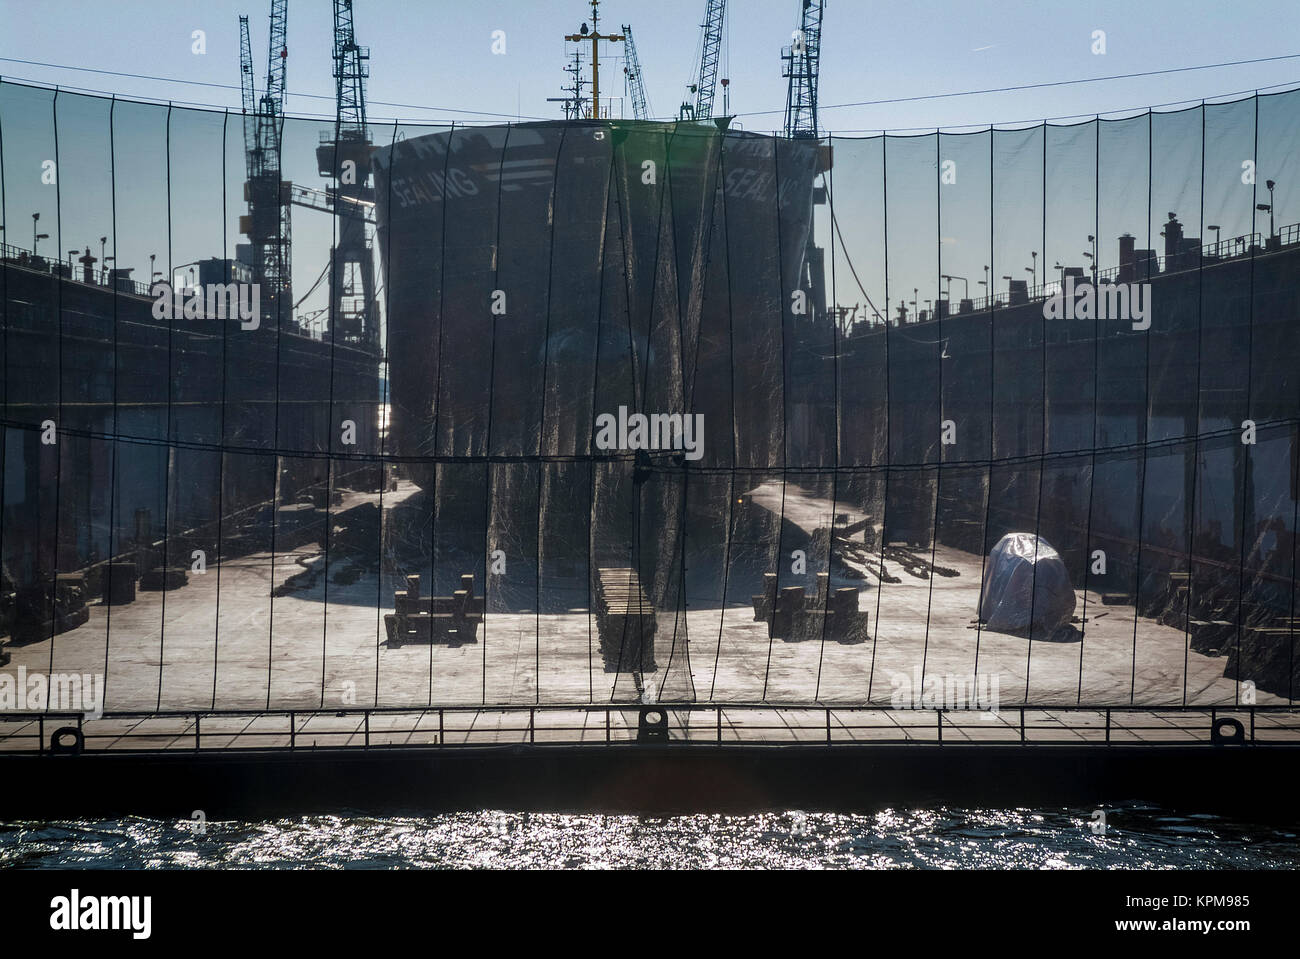 Amburgo, uno dei più belli e più popolari destinazioni turistiche in tutto il mondo. Bacino di carenaggio del cantiere navale Blohm & Voss, sull'Elba. Foto Stock